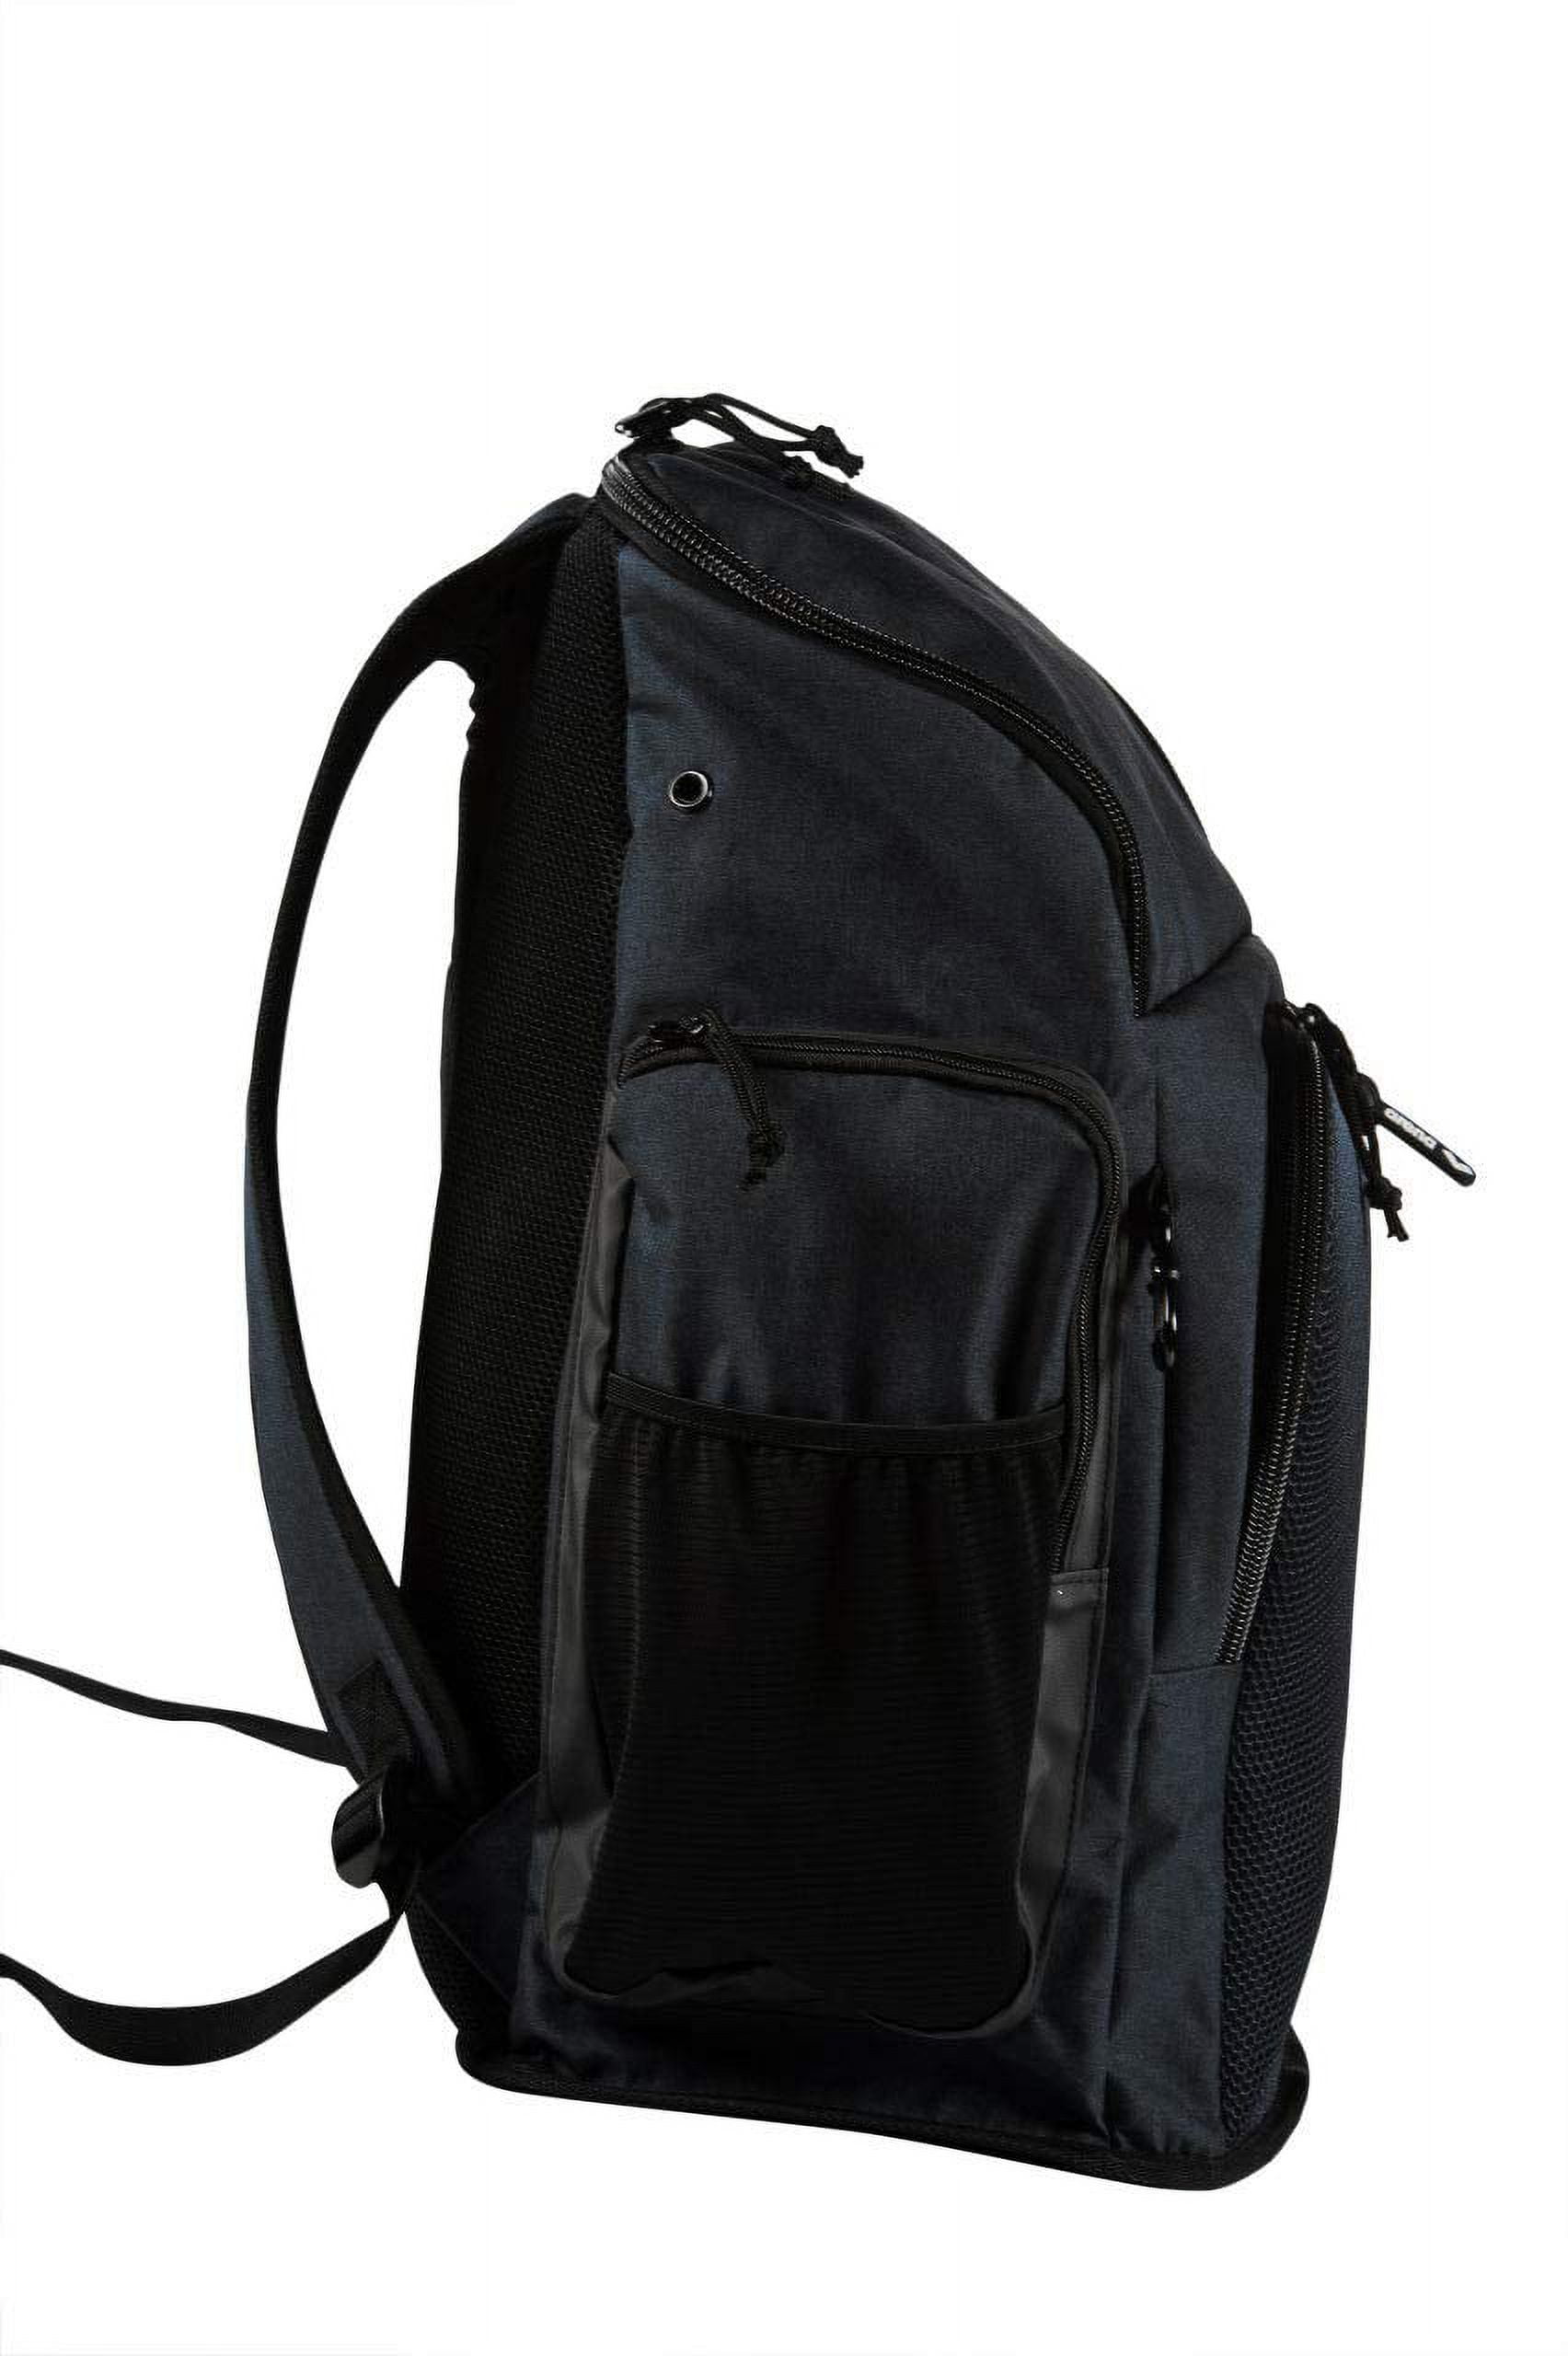 Nueva temporada de mochilas arena. Team 45 backpack. Conseguila ya en  solonatacion.com y en Ciudad de la Paz 2153 #solonatacion